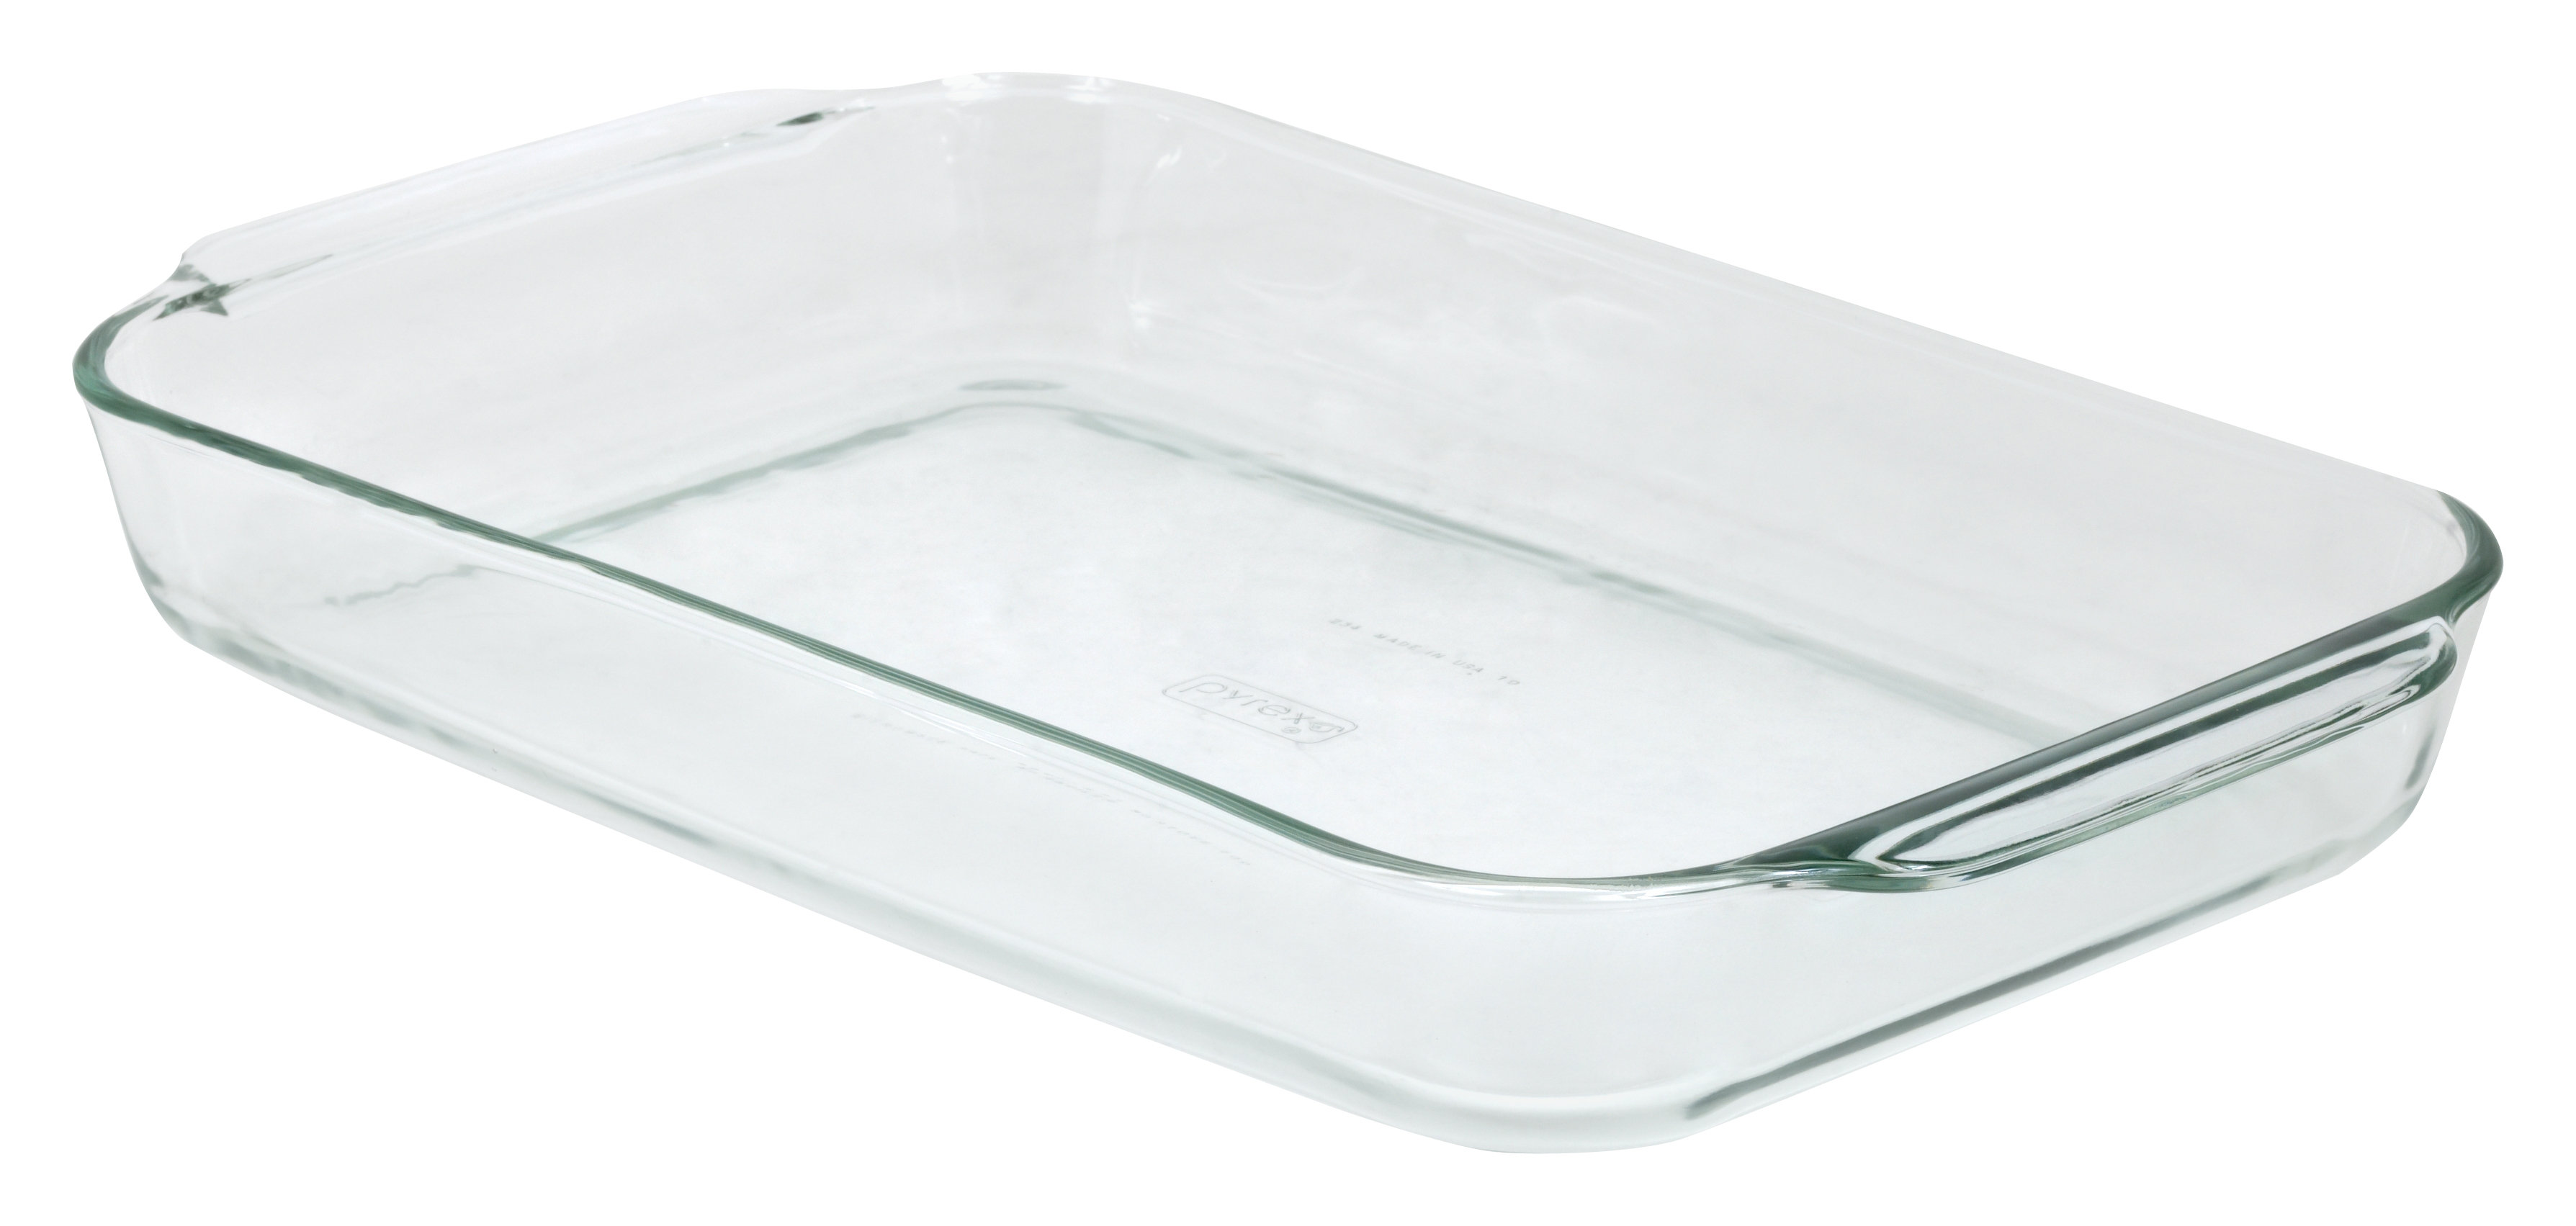 Sofa cooker glass. Pyrex Glass. Pyrex Essentials 2.1 л. Glass Pyrex Baking dish. Противень для лазаньи.